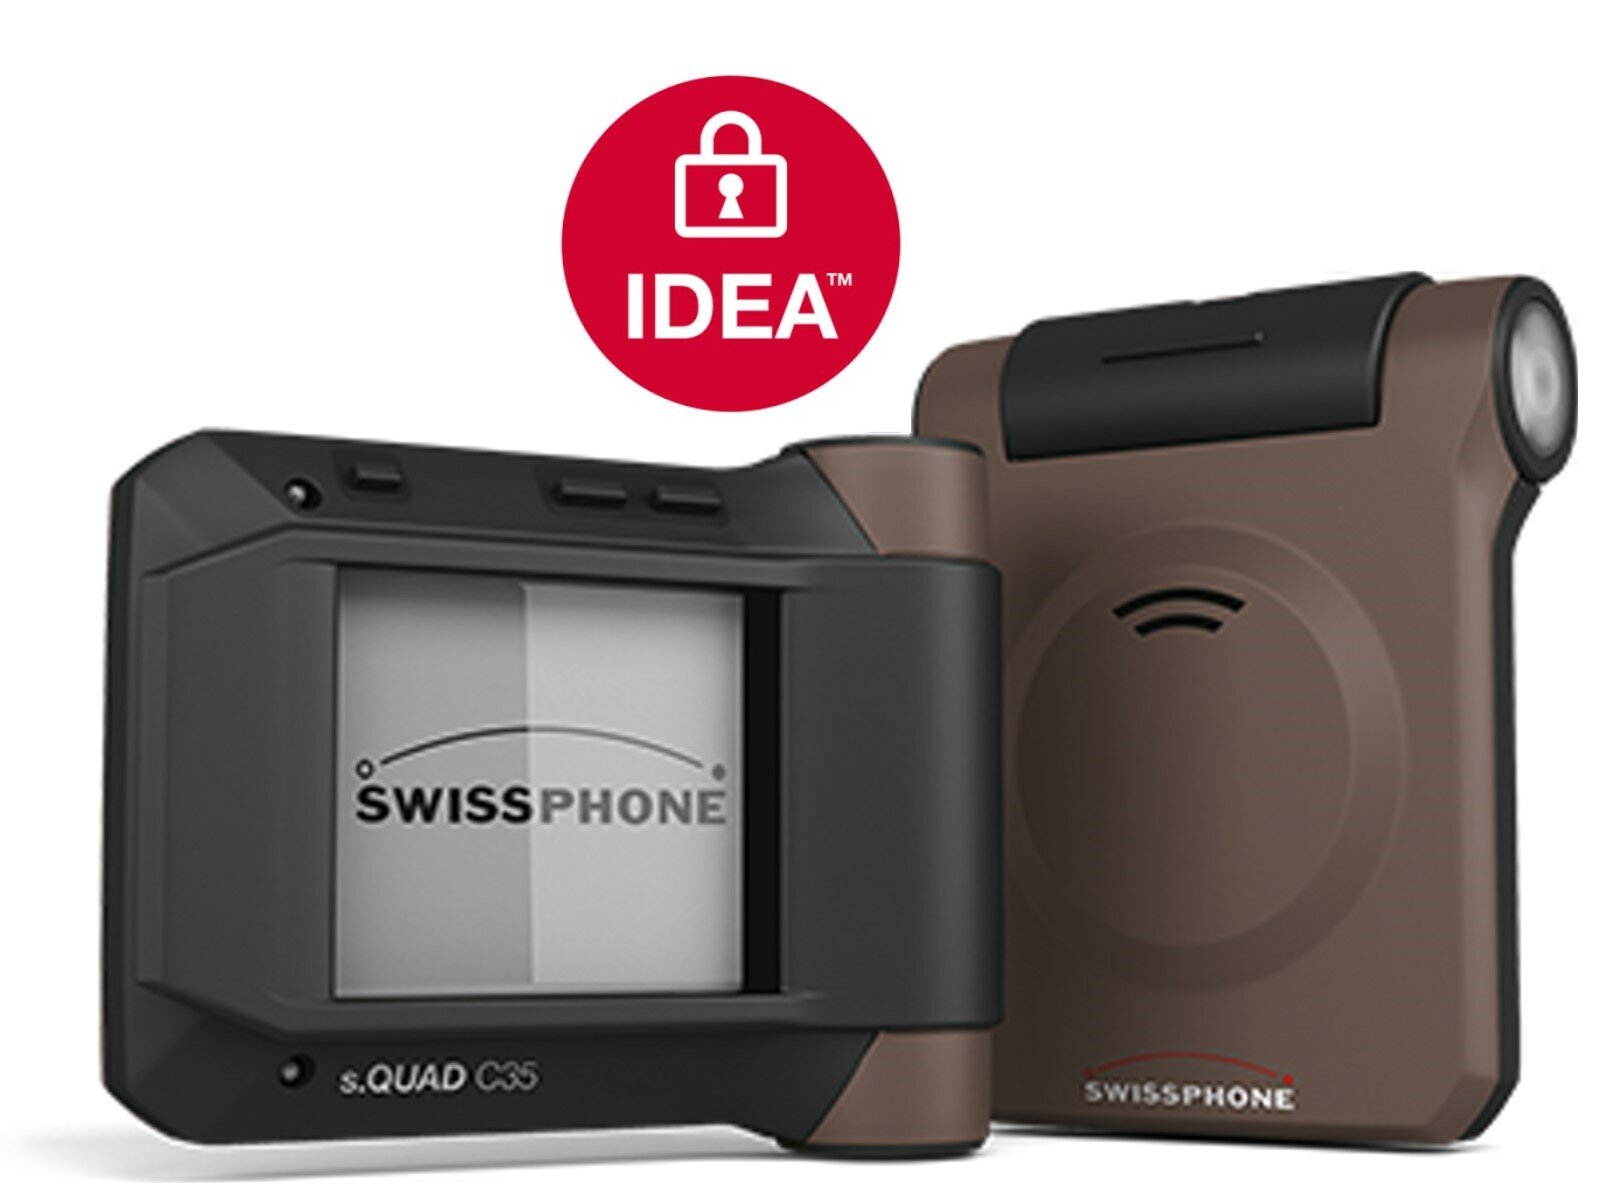 Swissphone s.QUAD C35 VMK